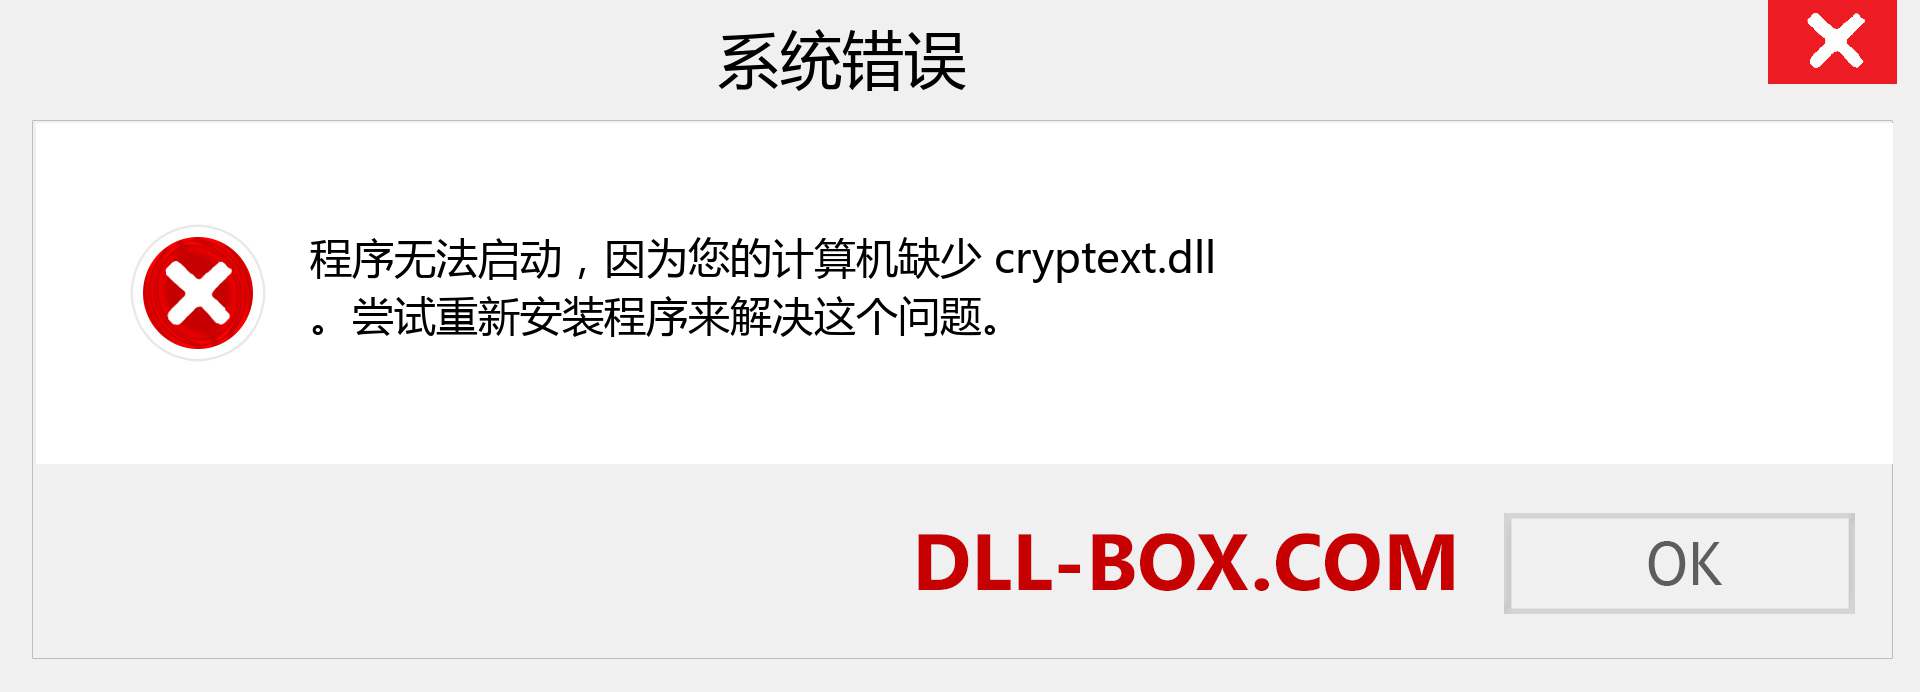 cryptext.dll 文件丢失？。 适用于 Windows 7、8、10 的下载 - 修复 Windows、照片、图像上的 cryptext dll 丢失错误